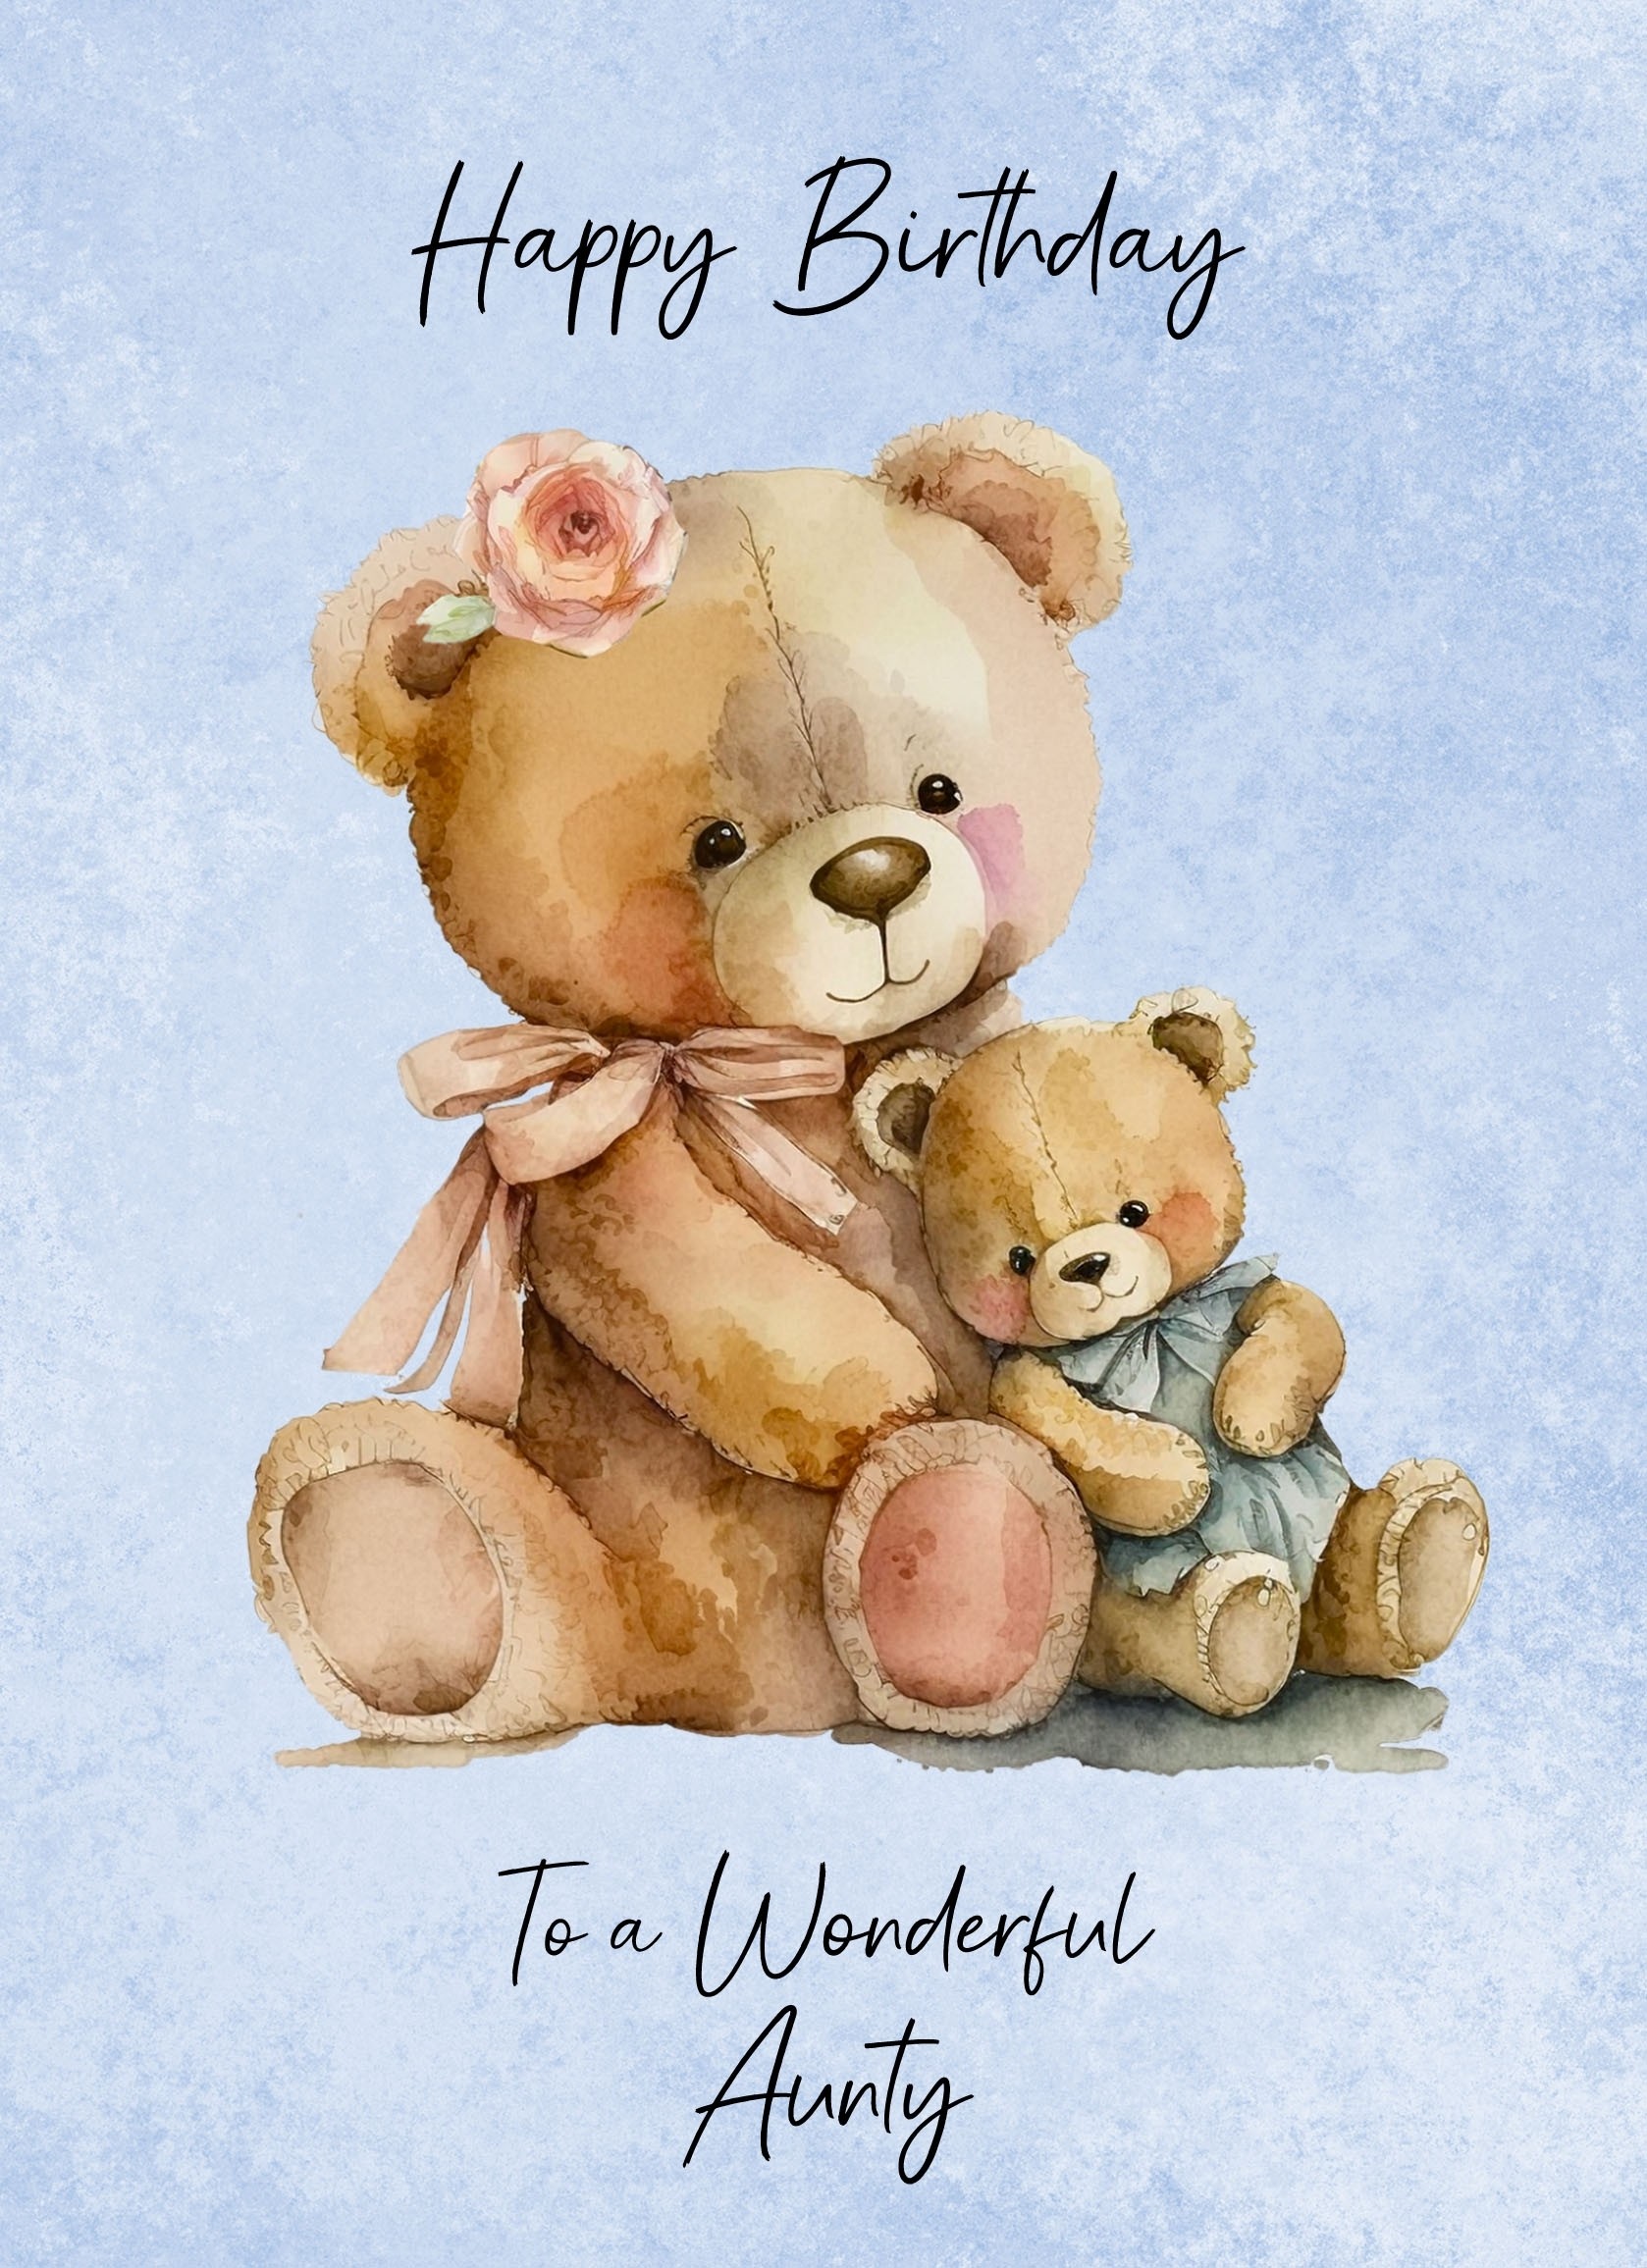 Cuddly Bear Art Birthday Card For Aunty (Design 2)